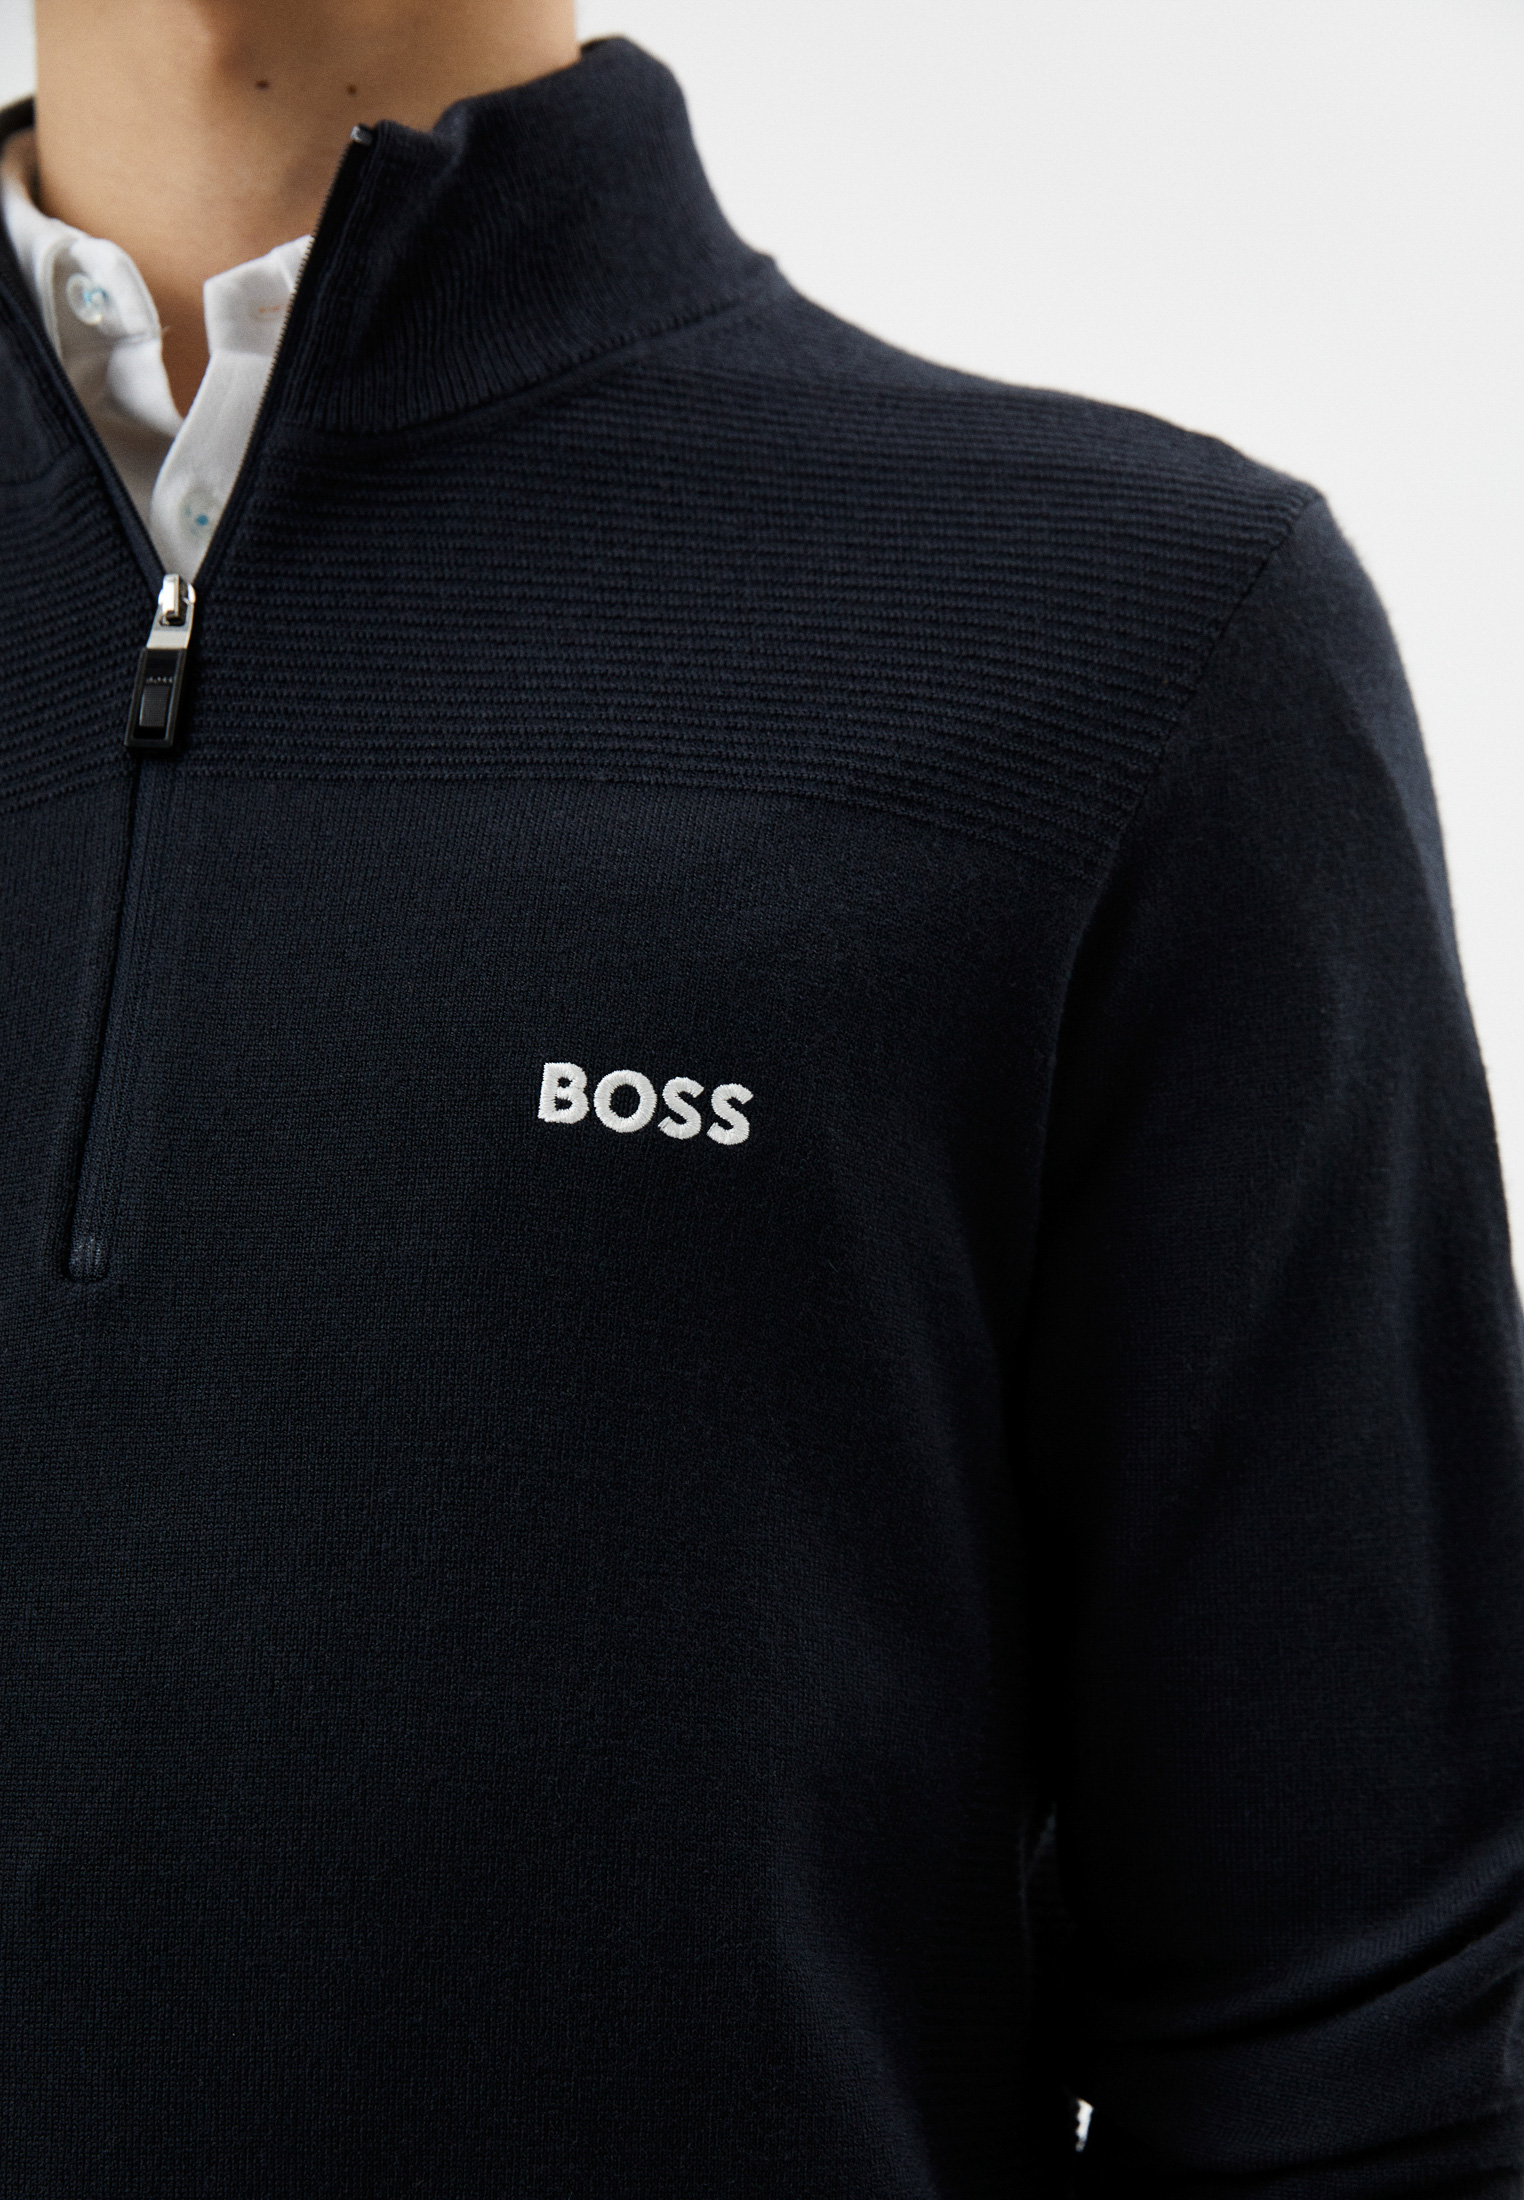 Мужской свитер Boss (Босс) 50492641: изображение 4